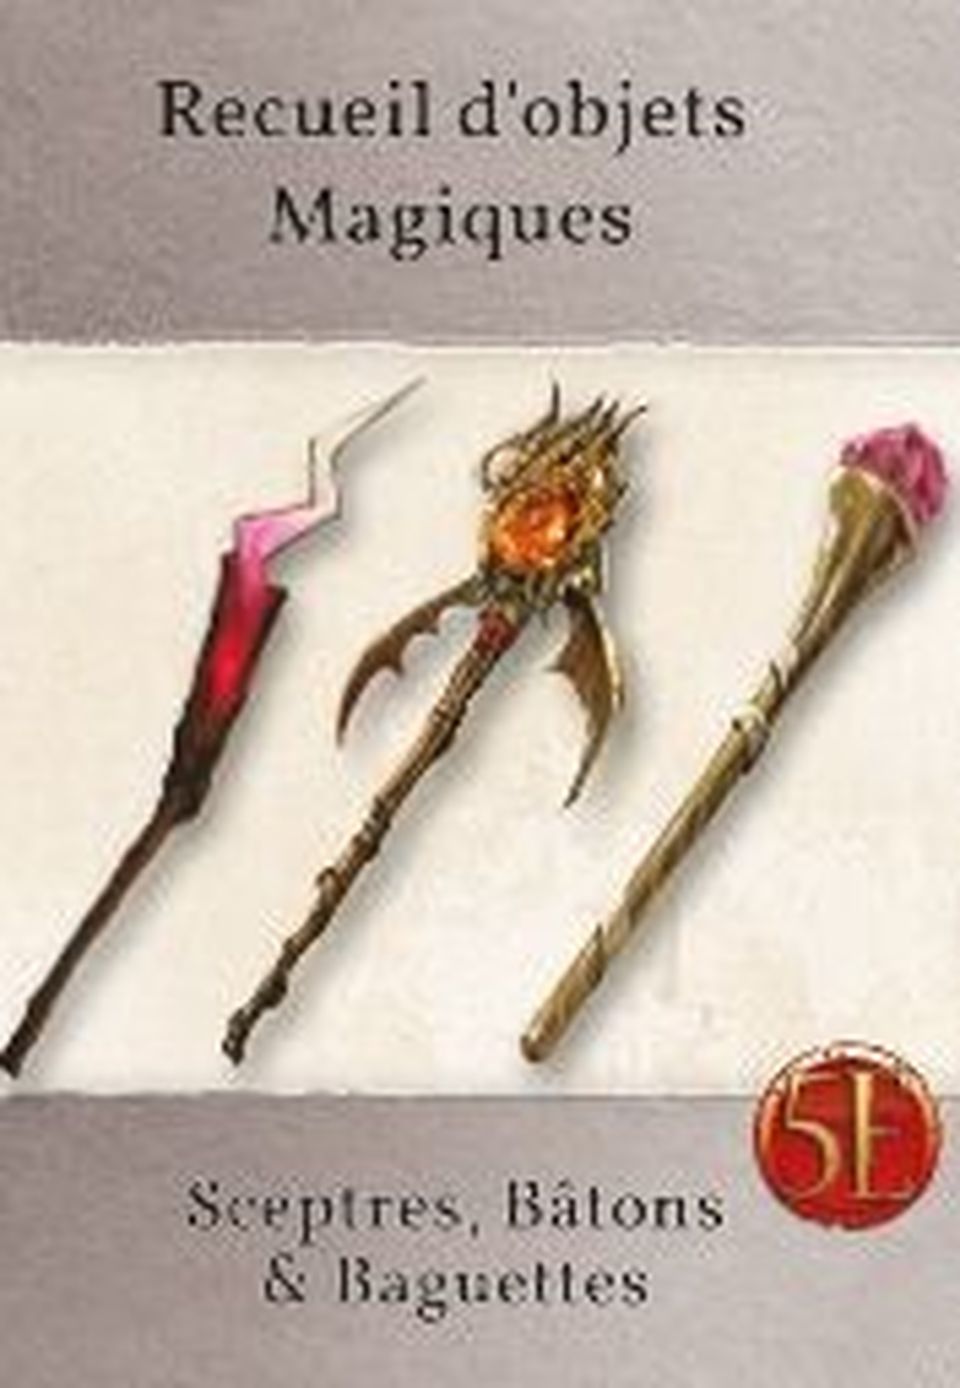 Recueil d'objets magiques : Sceptres, bâtons et baguettes image